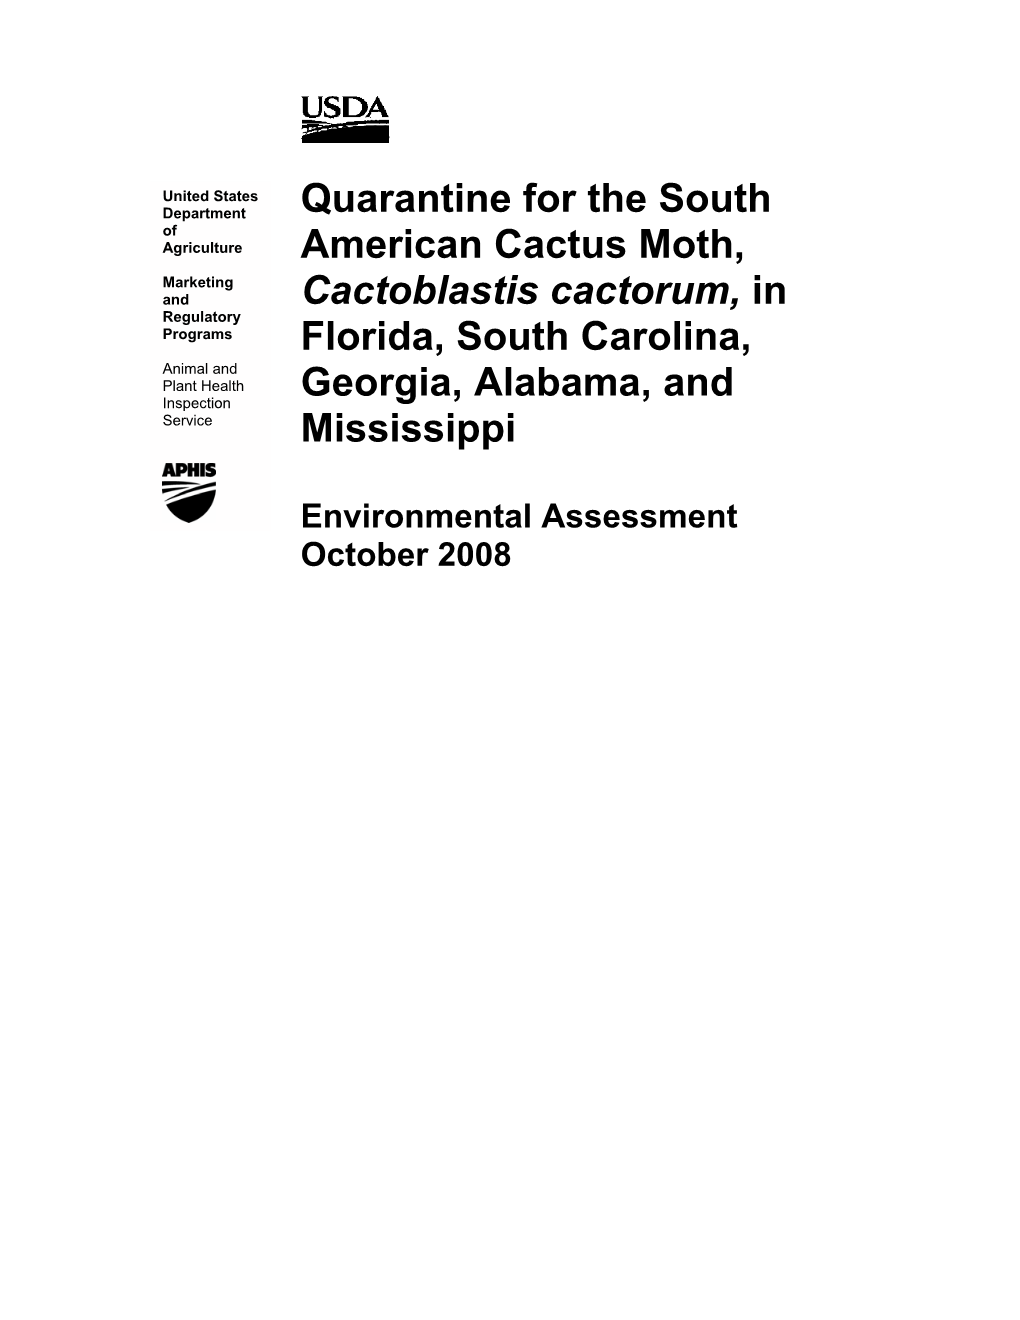 Quarantine for the South American Cactus Moth, Cactoblastis Cactorum, in Florida, South Carolina, Georgia, Alabama, and Mississippi